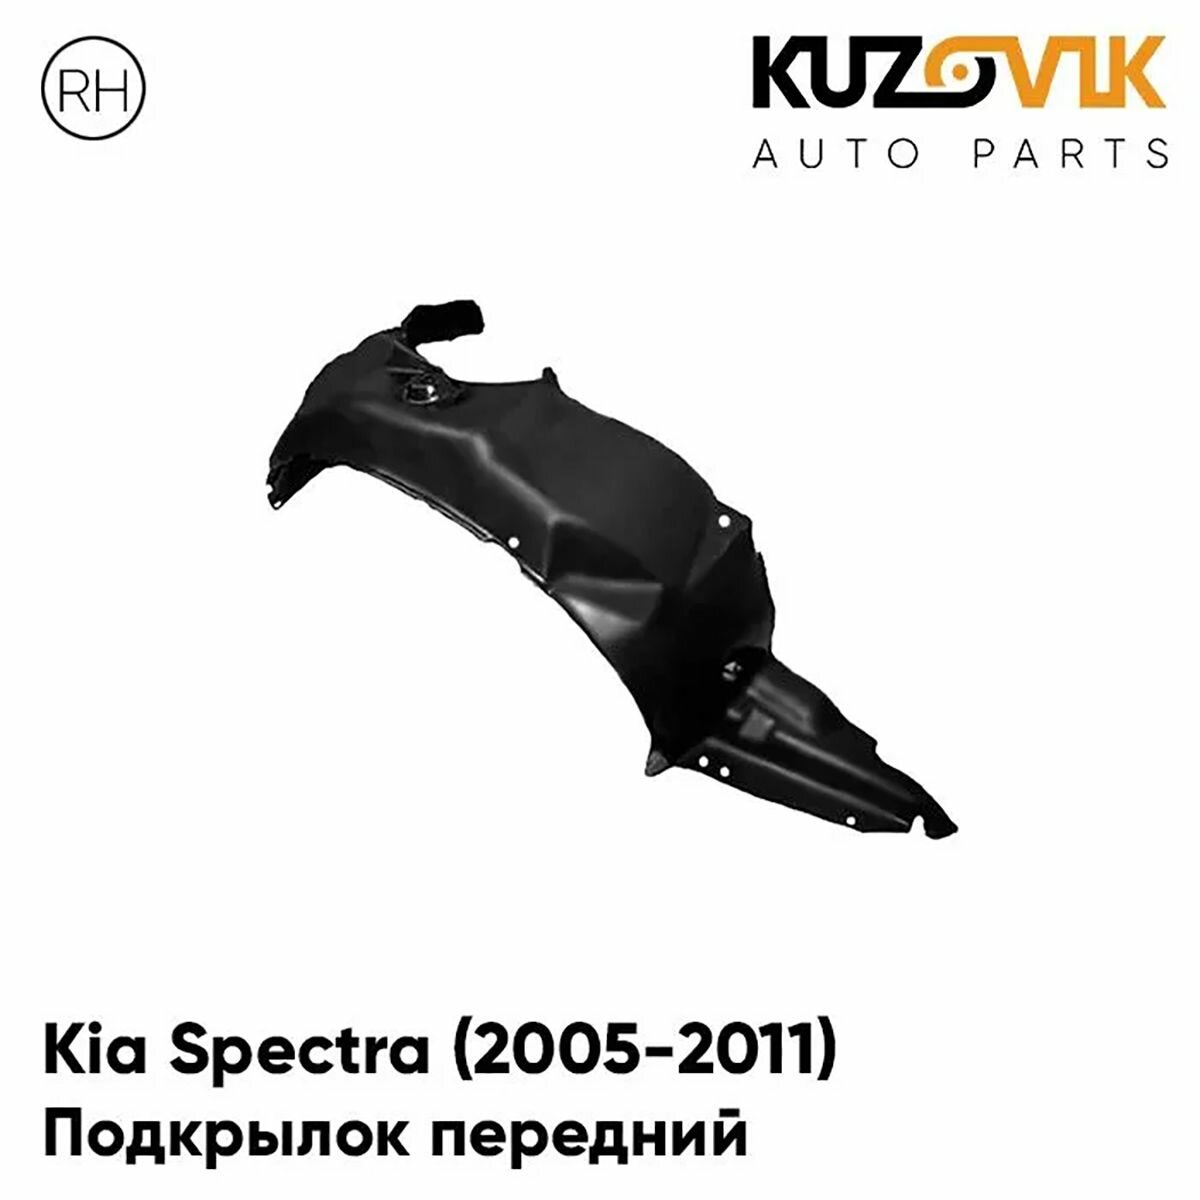 Подкрылок передний правый Kia Spectra Киа Спектра (2005-2011)